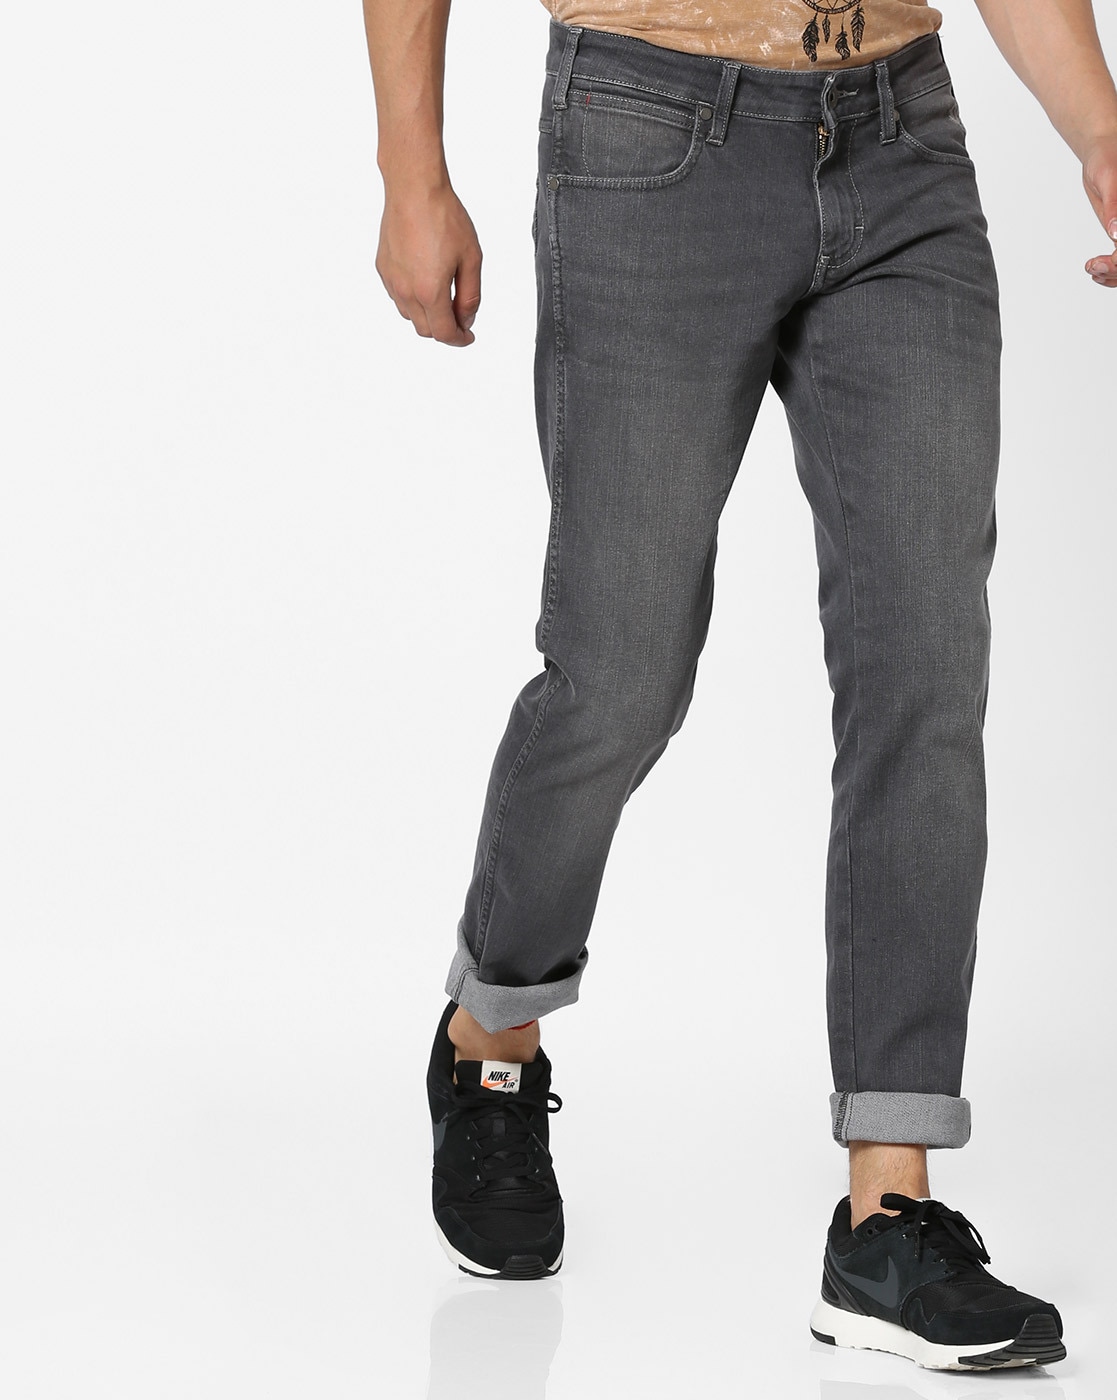 Buy Black Jeans for Men by WRANGLER Online 